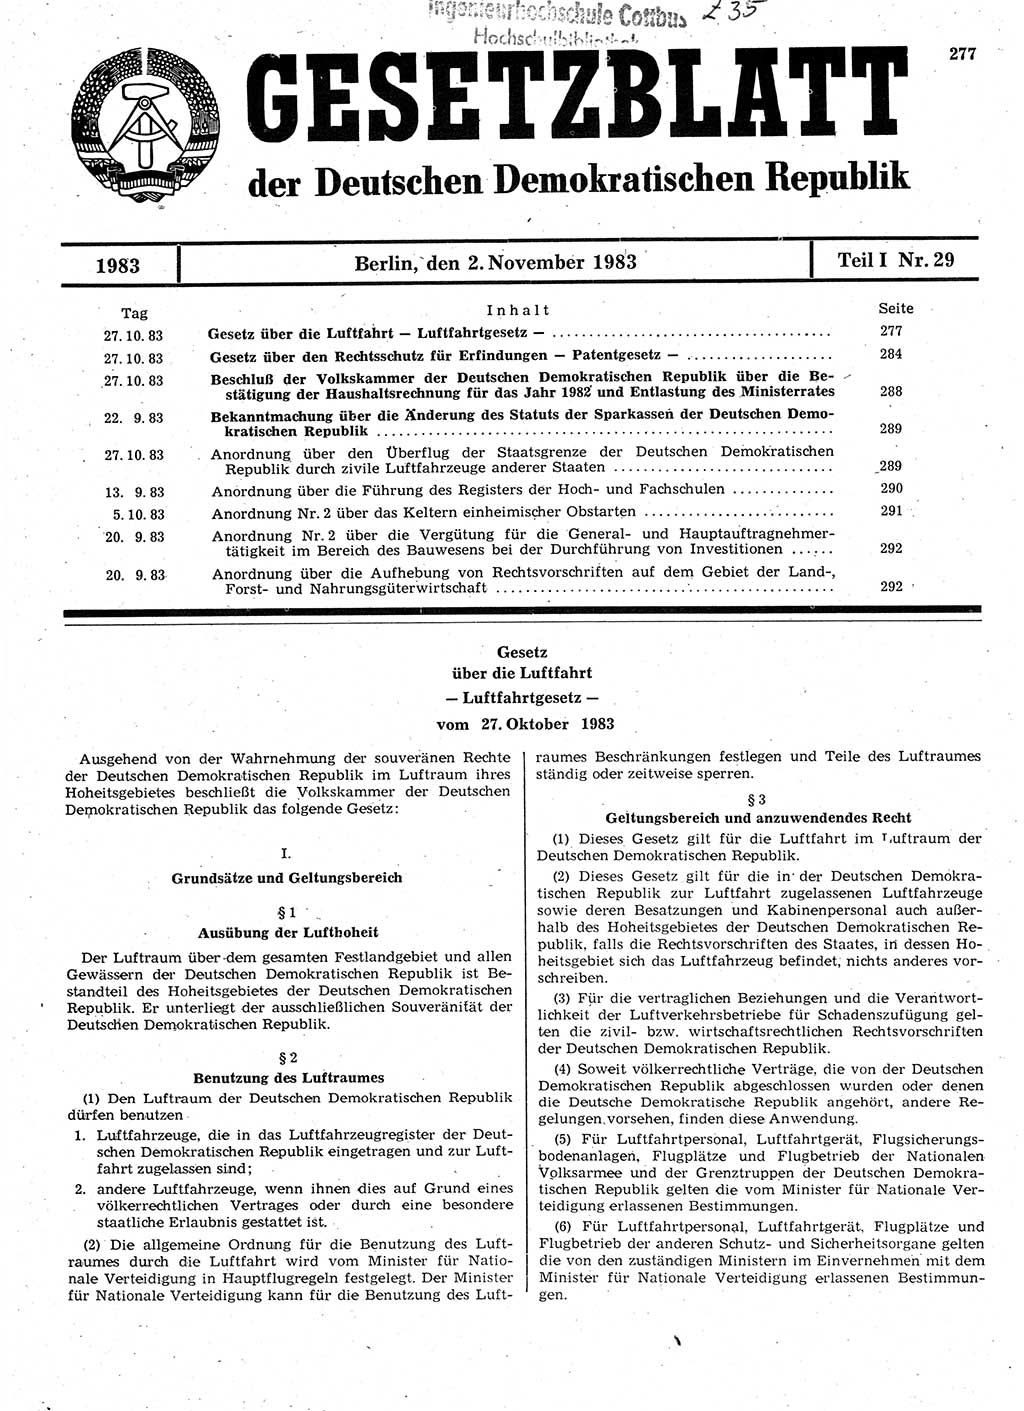 Gesetzblatt (GBl.) der Deutschen Demokratischen Republik (DDR) Teil Ⅰ 1983, Seite 277 (GBl. DDR Ⅰ 1983, S. 277)